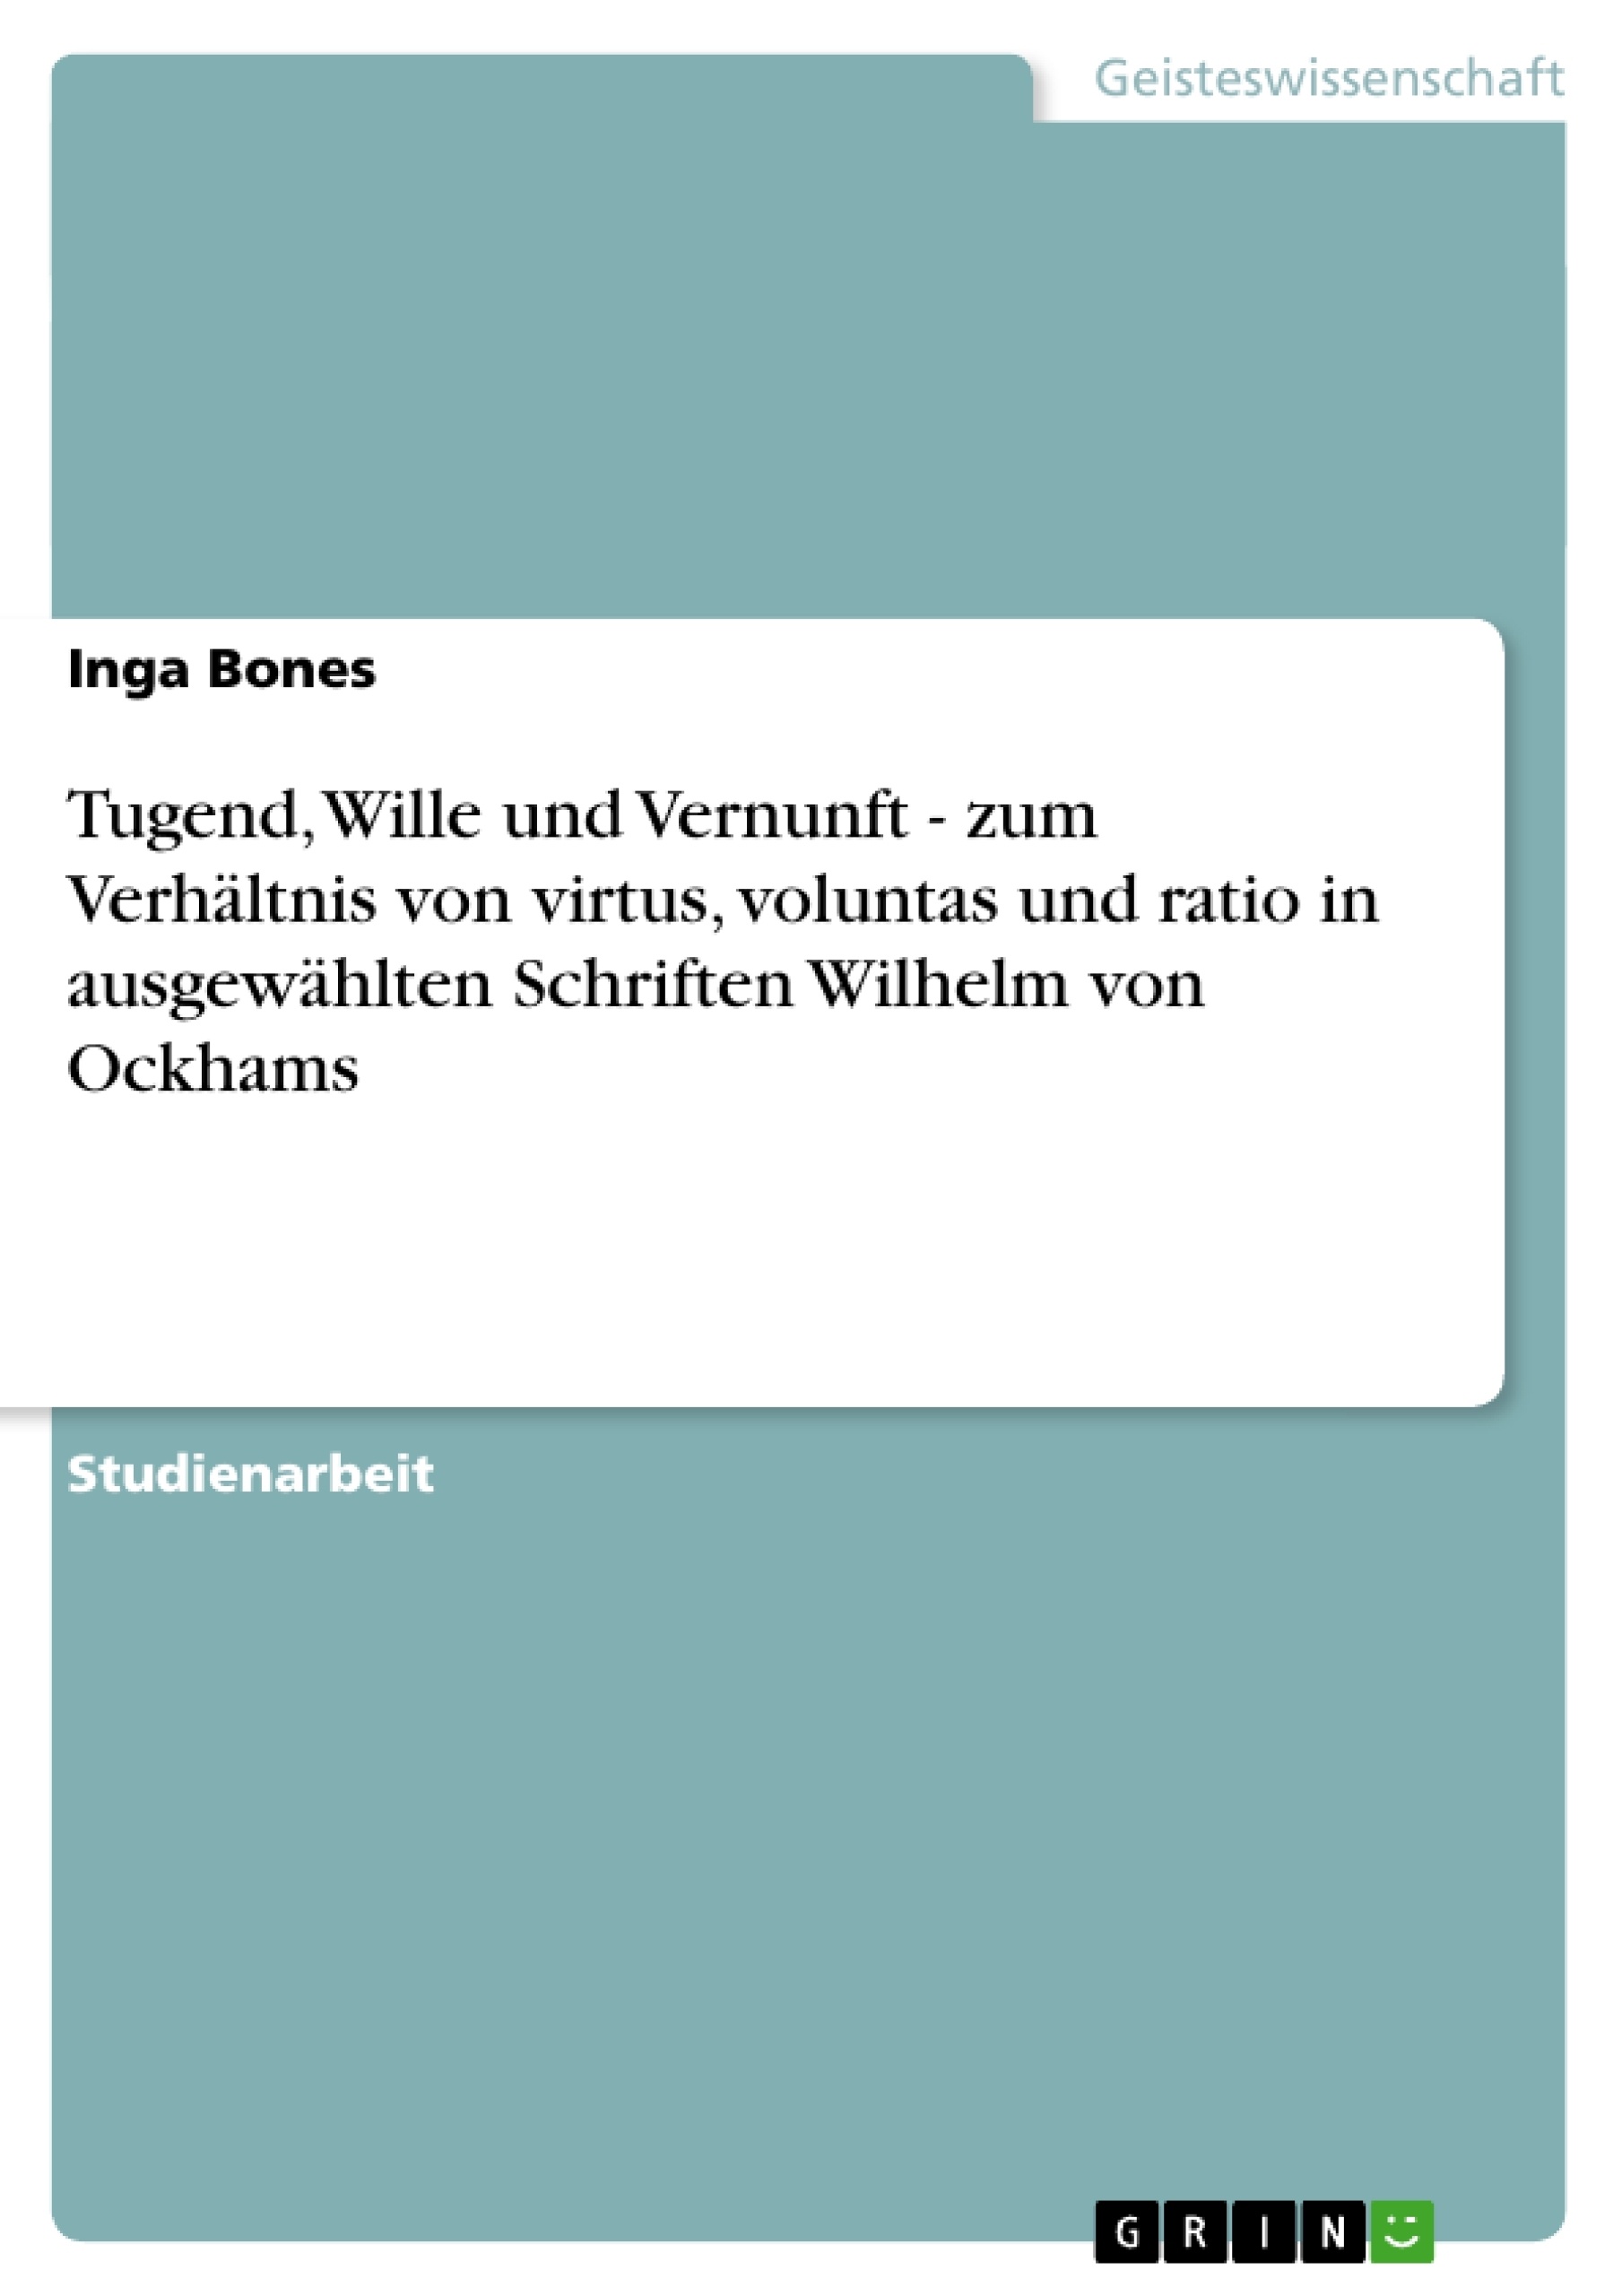 Titre: Tugend, Wille und Vernunft - zum Verhältnis von virtus, voluntas und ratio in ausgewählten Schriften Wilhelm von Ockhams